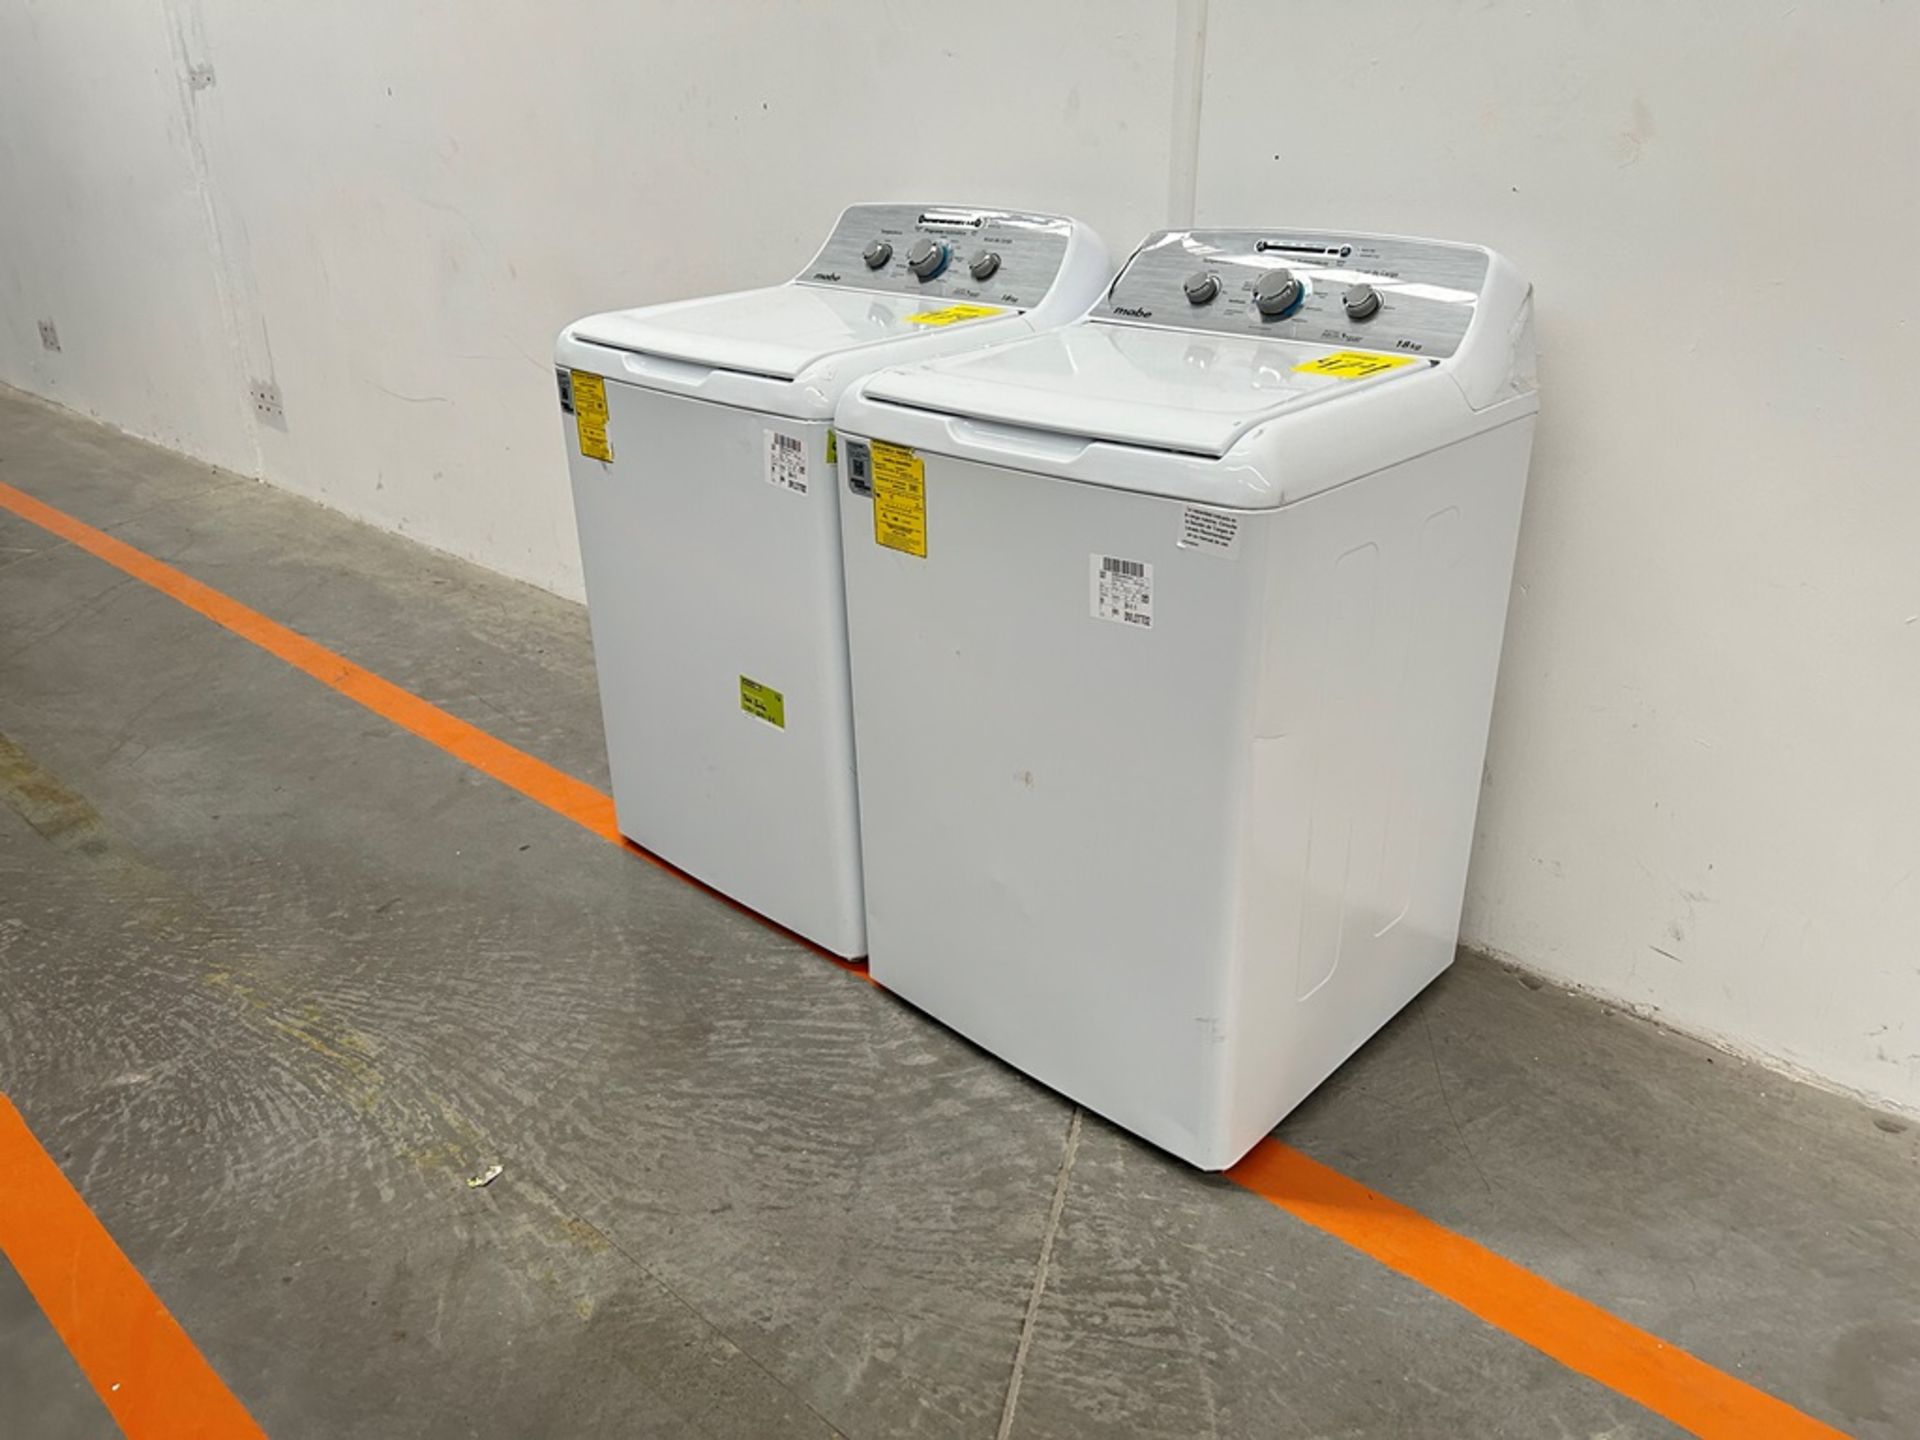 Lote de 2 lavadoras contiene: 1 Lavadora de 18 KG Marca MABE, Modelo LMA78113CBAB01, Serie S74287, - Image 3 of 10